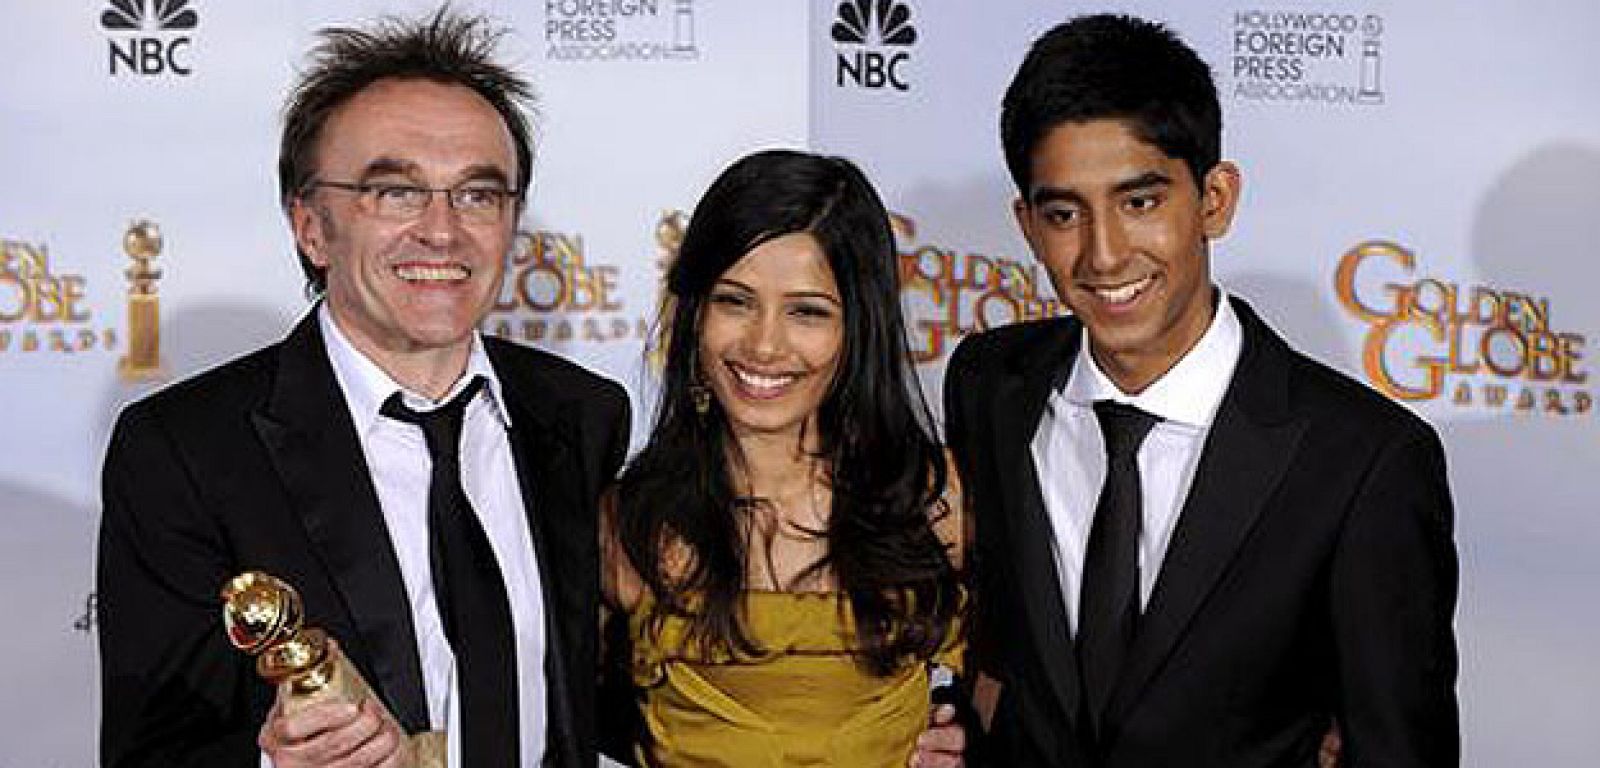 El director británico de cine Danny Boyle posa junto a los actores Freida Pinto y Dev Patel tras recibir el Globo de Oro a Mejor director por la película "Slumdog Millionaire".